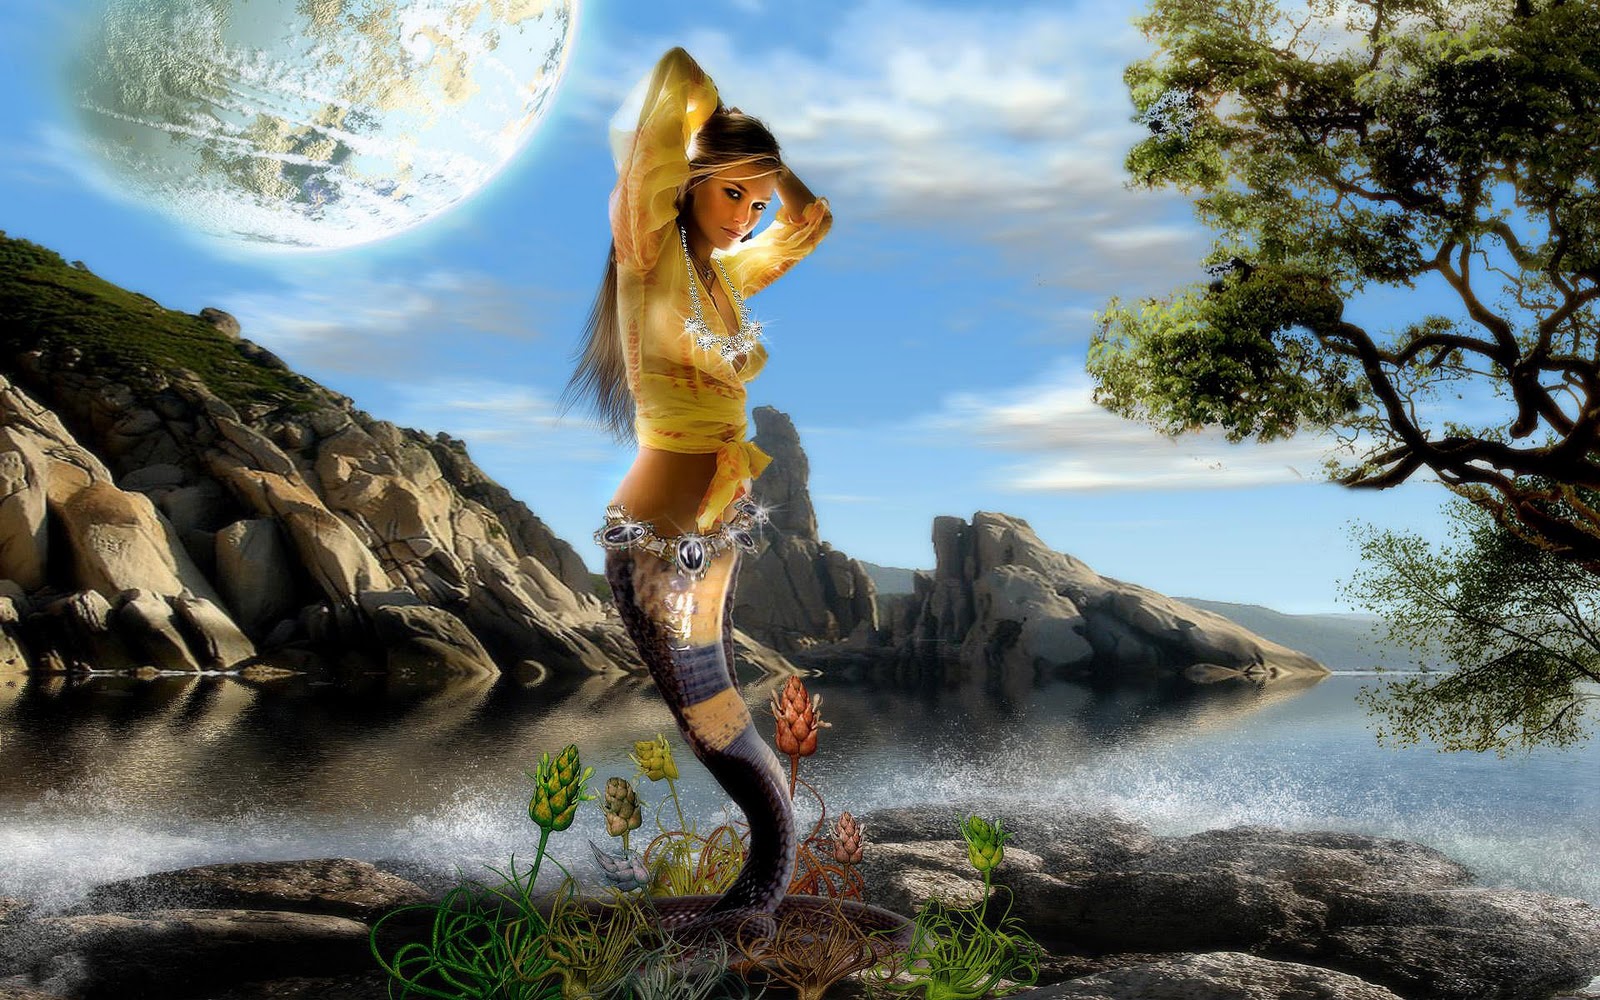  Animated Fantasy Desktop Wallpaper PicsWallpapercom 1600x1000